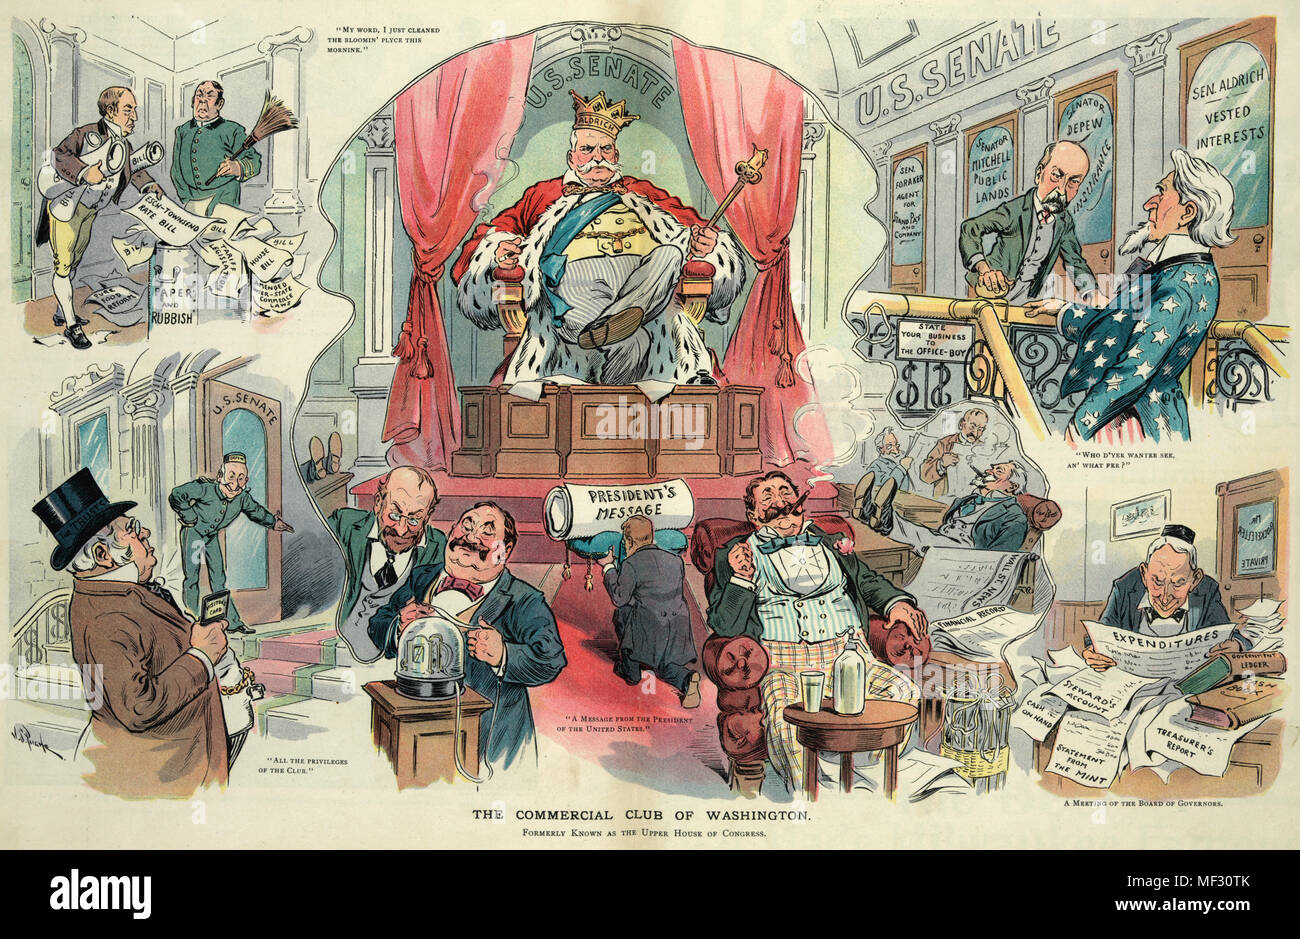 Il club commerciale di Washington - Illustrazione mostra Nelson Aldrich come re del 'U.S. Senato' seduta su un trono con un diminutivo Theodore Roosevelt inginocchiato davanti a lui il cuscinetto " il Messaggio del Presidente', intorno a loro senatori sono la lettura di Ticker tape o godendo il successo dei loro investimenti. La circostante vignette illustrano ELENA M. Depew come un portiere e accogliente un uomo etichettato 'l'investimento" nel 'U.S. Senato', John D. Rockefeller seduti ad una scrivania versando su 'Rapporti' e 'Spese', Charles W. Fairbanks come un ufficio boy fermando lo zio Sam in cima alle scale esigente w Foto Stock